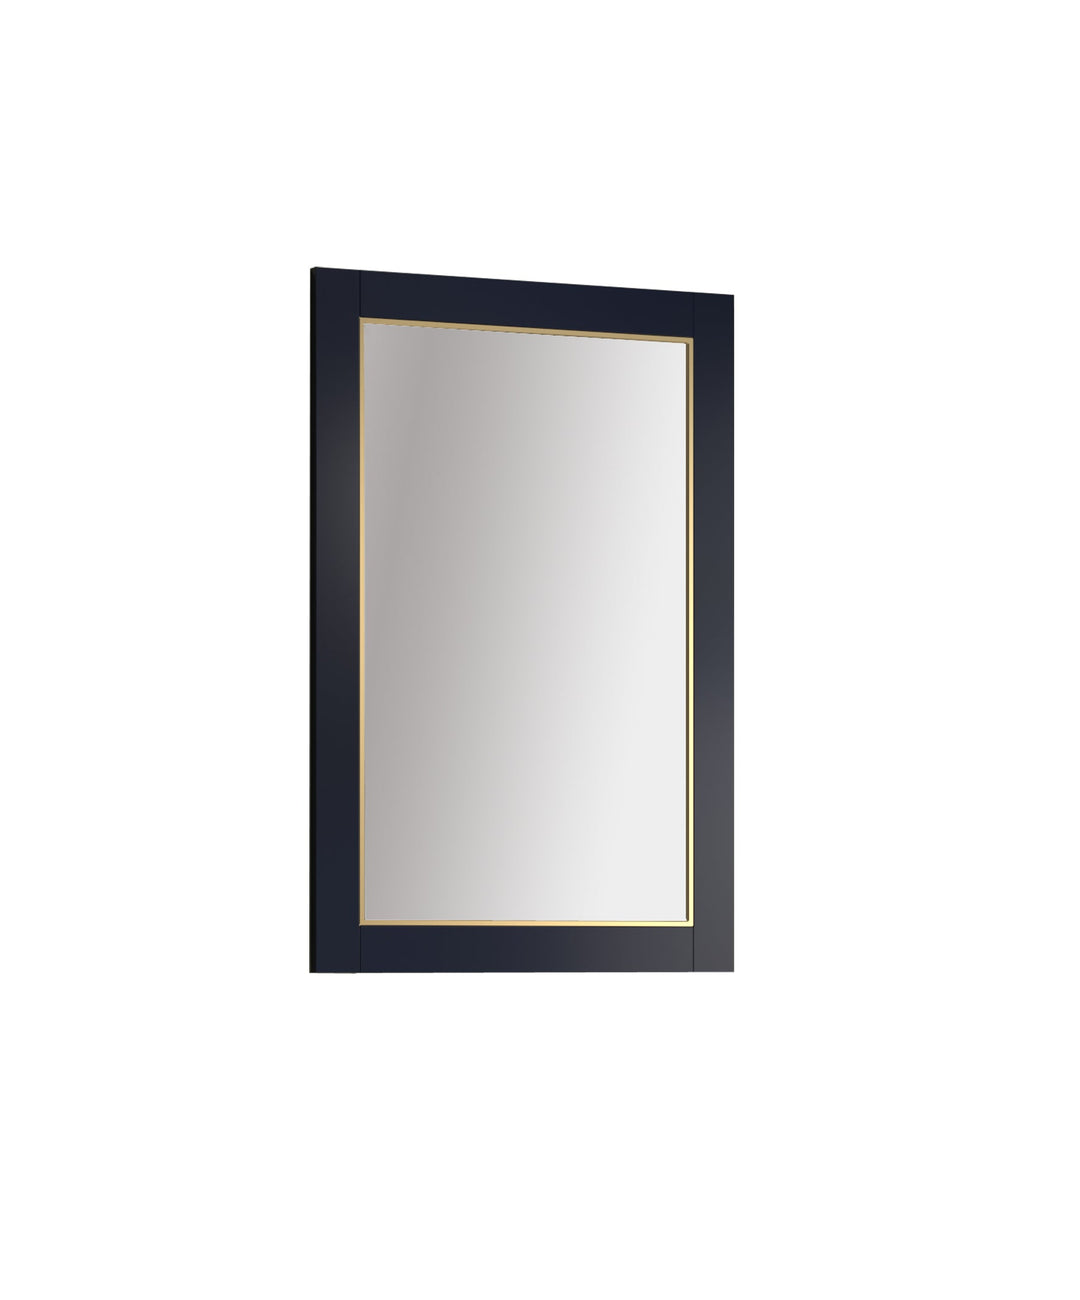 Legion Furniture Series 2224 24” x 36” Wood Mirror